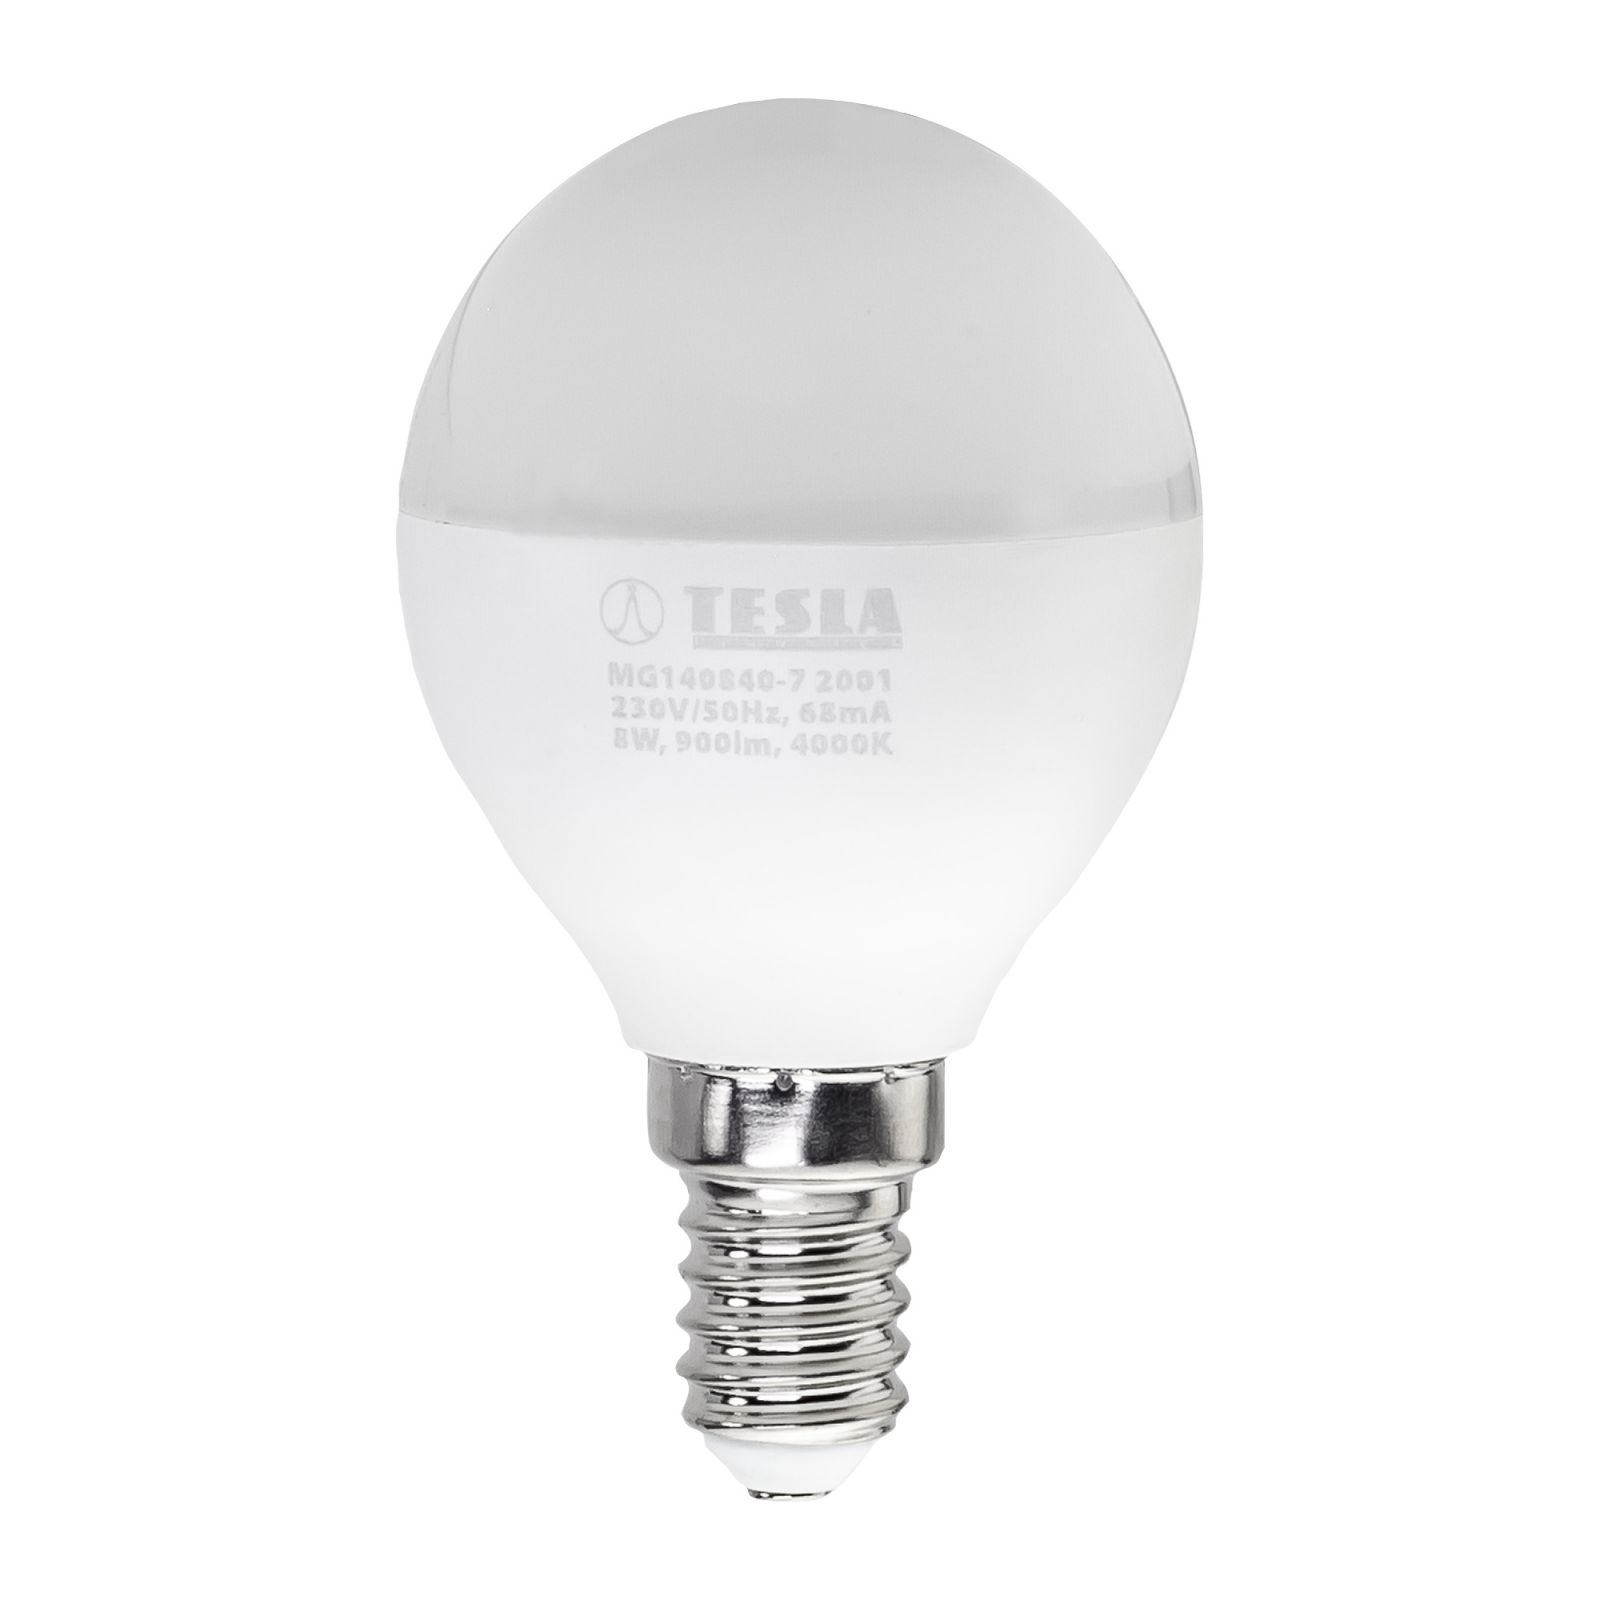 Tesla - LED žárovka miniglobe BULB E14, 8W, 230V, 900lm, 25 000h, 4000K denní bílá, 220st Tesla Lighting